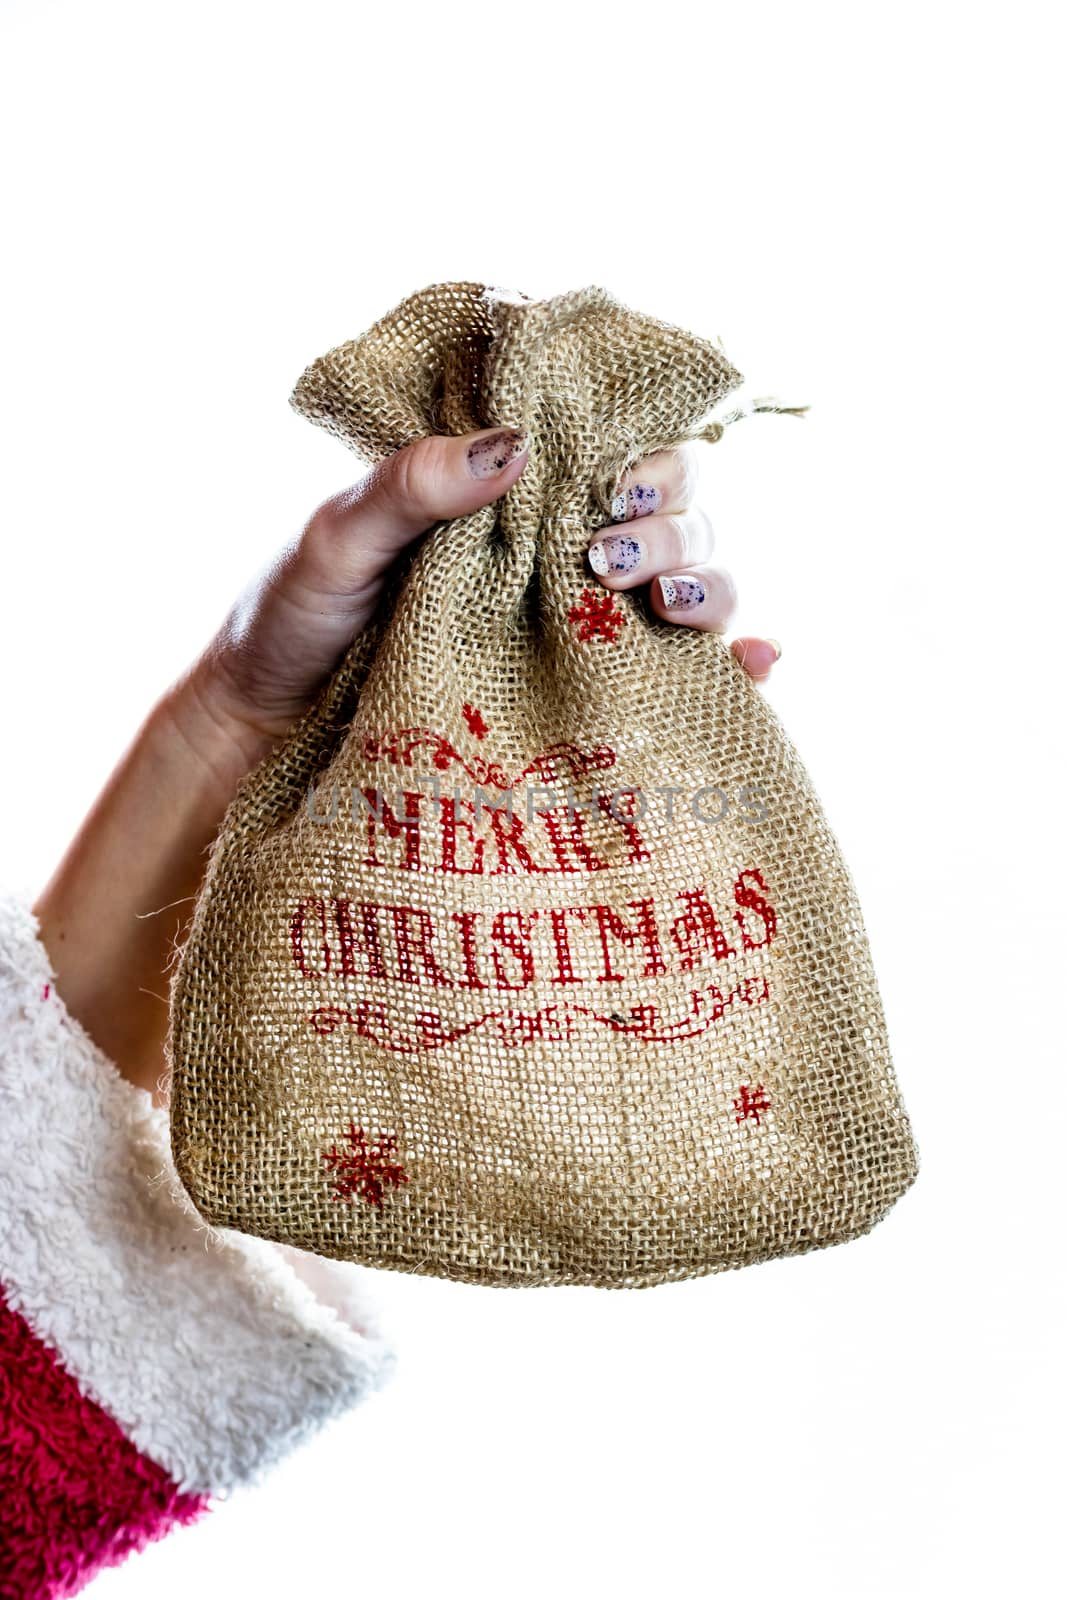 Hand holding Christmas burlap sack isolated on white background